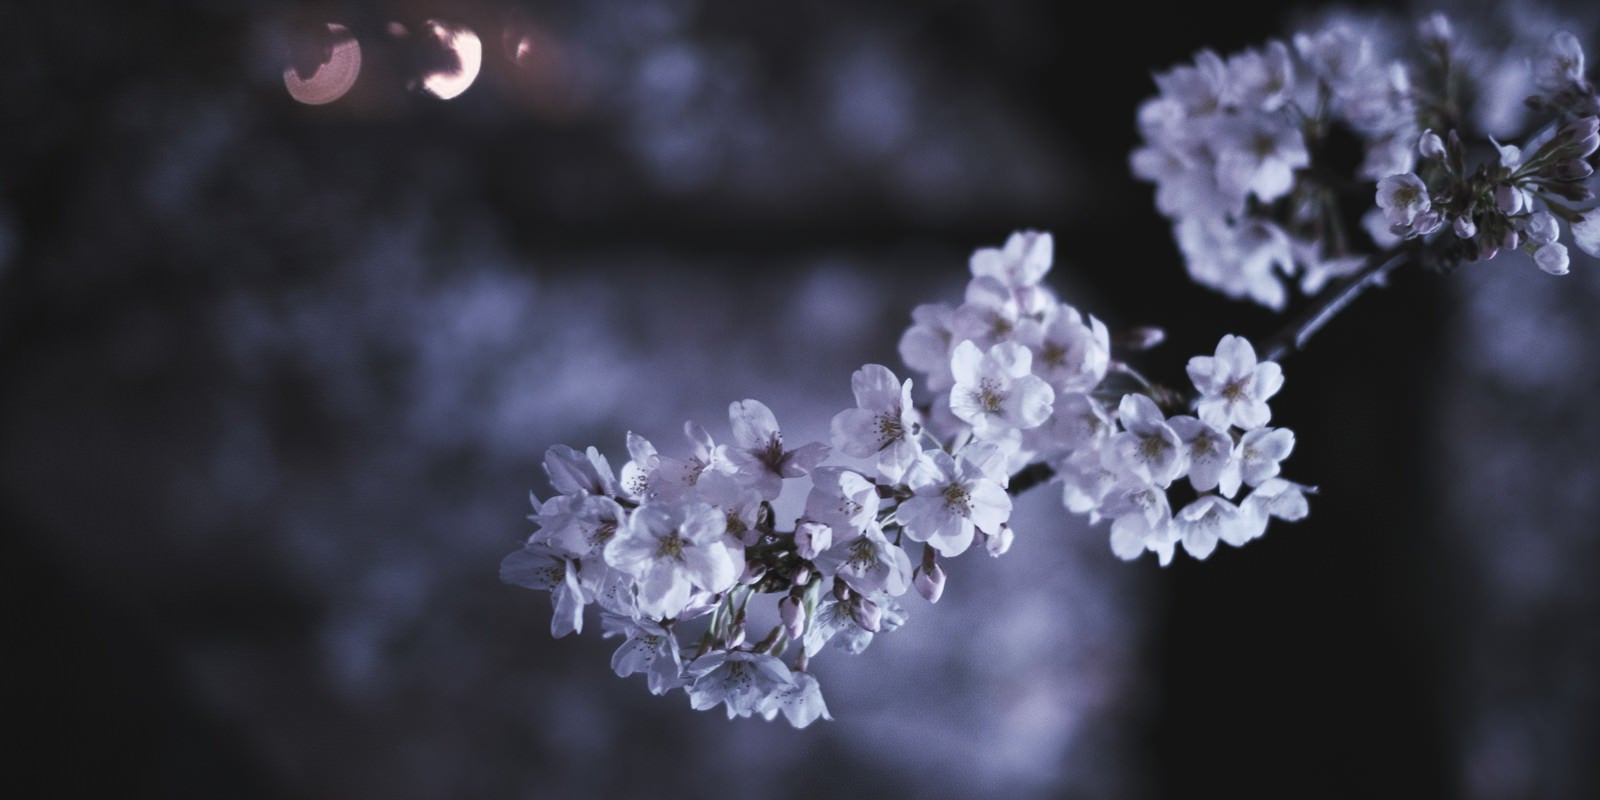 「夜の桜」の写真